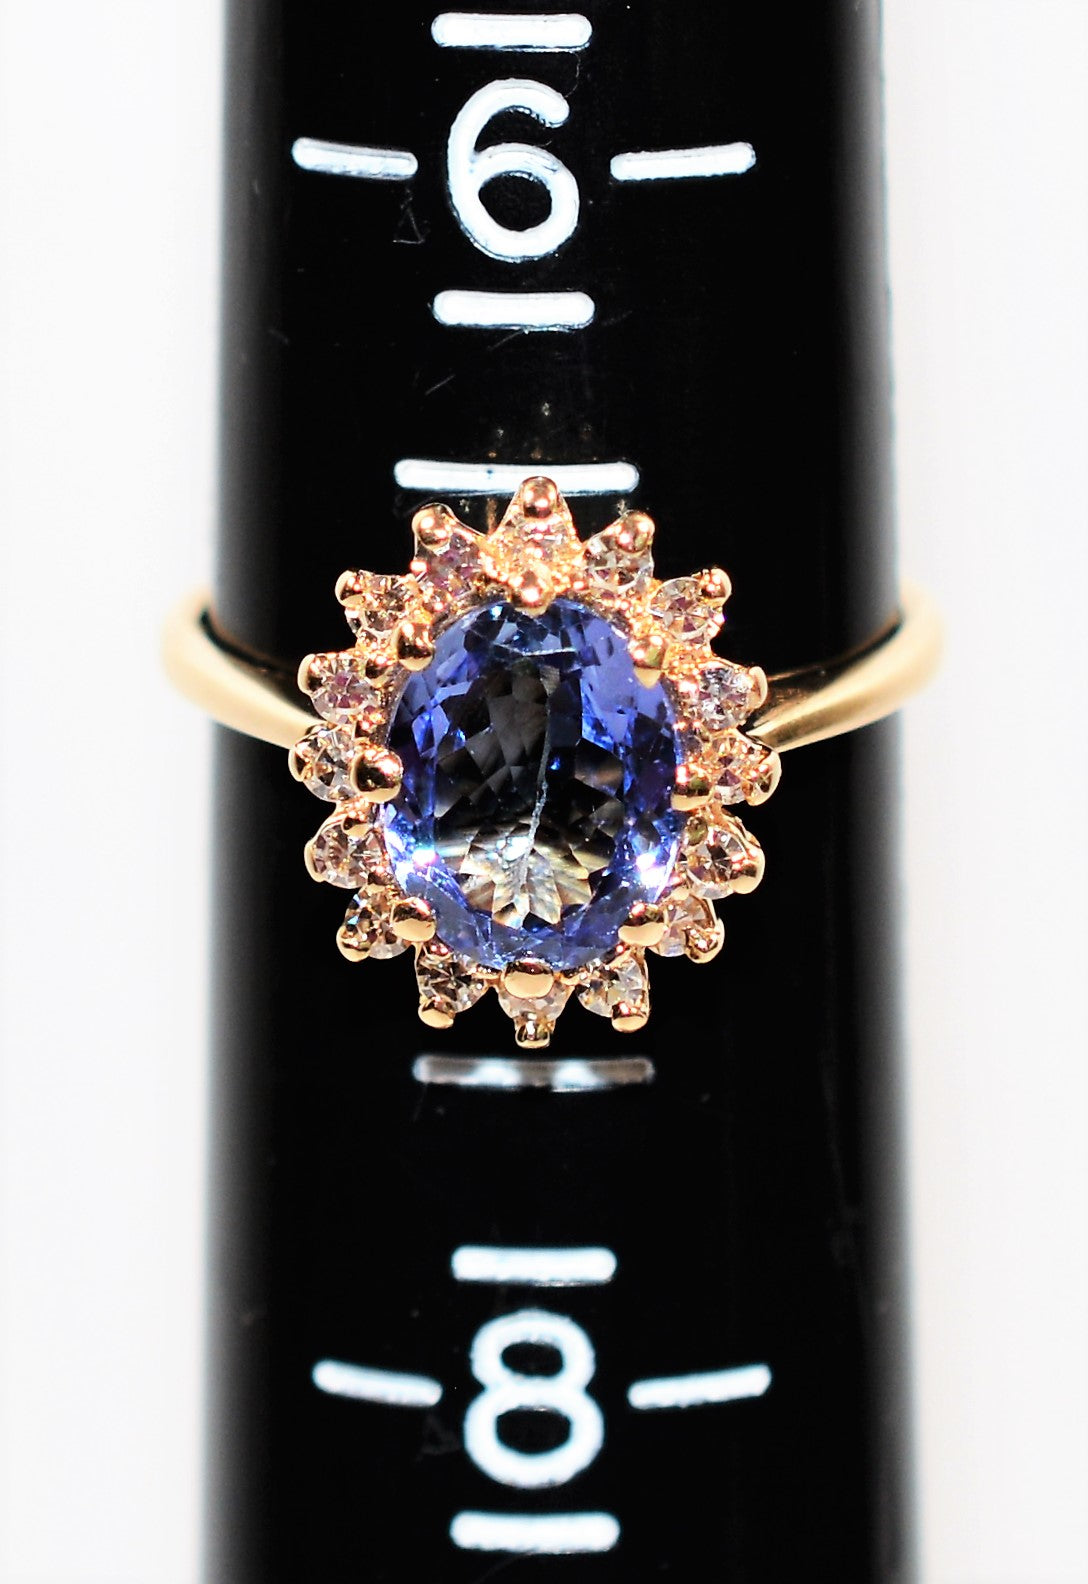 Certified Natural Tanzanite & Diamond Ring 14K Solid Gold 2.23tcw Tanzanite Ring Engagement Ring Cocktail Ring Statement Ring Women’s Ring